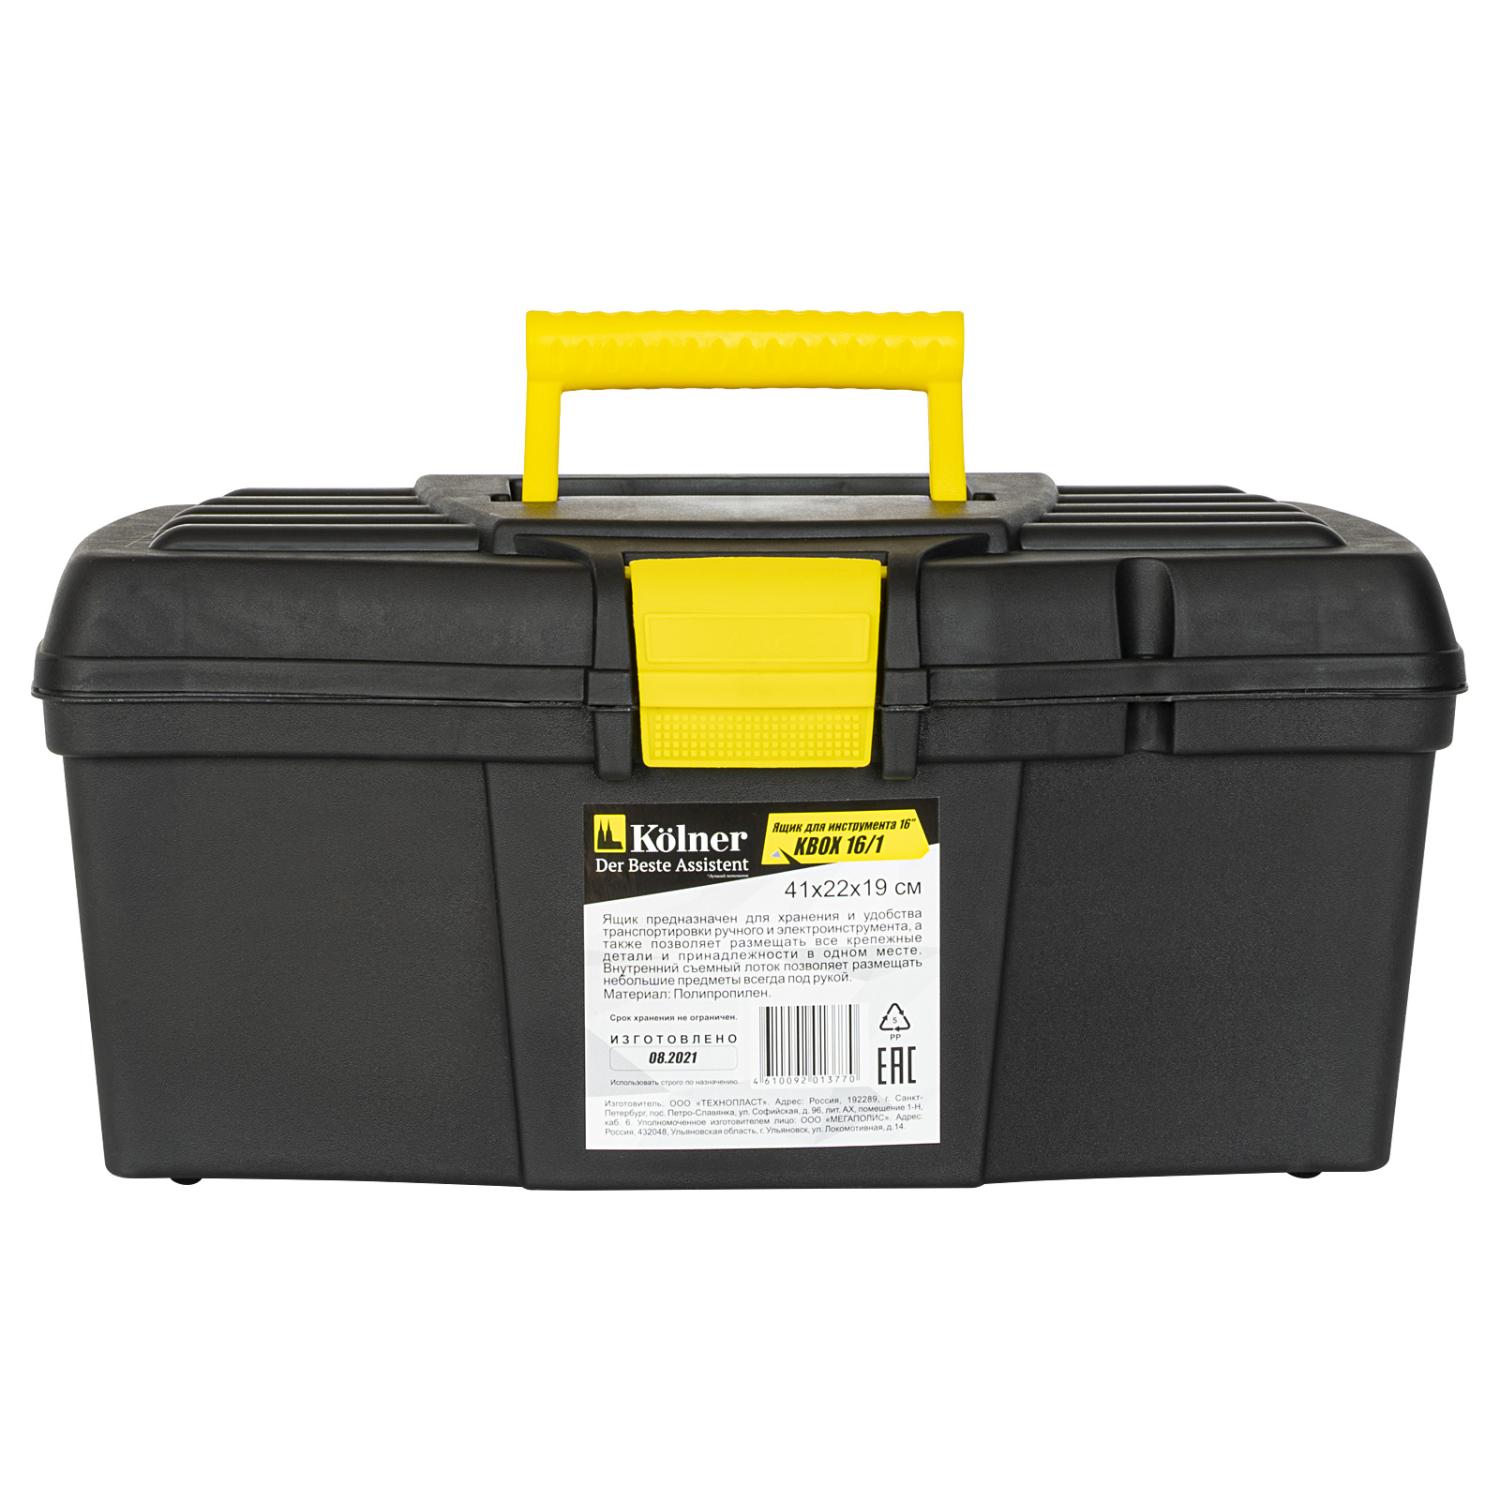 Ящик для инструментов пластиковый Kolner KBOX16/1 16" (41х22х19 см)